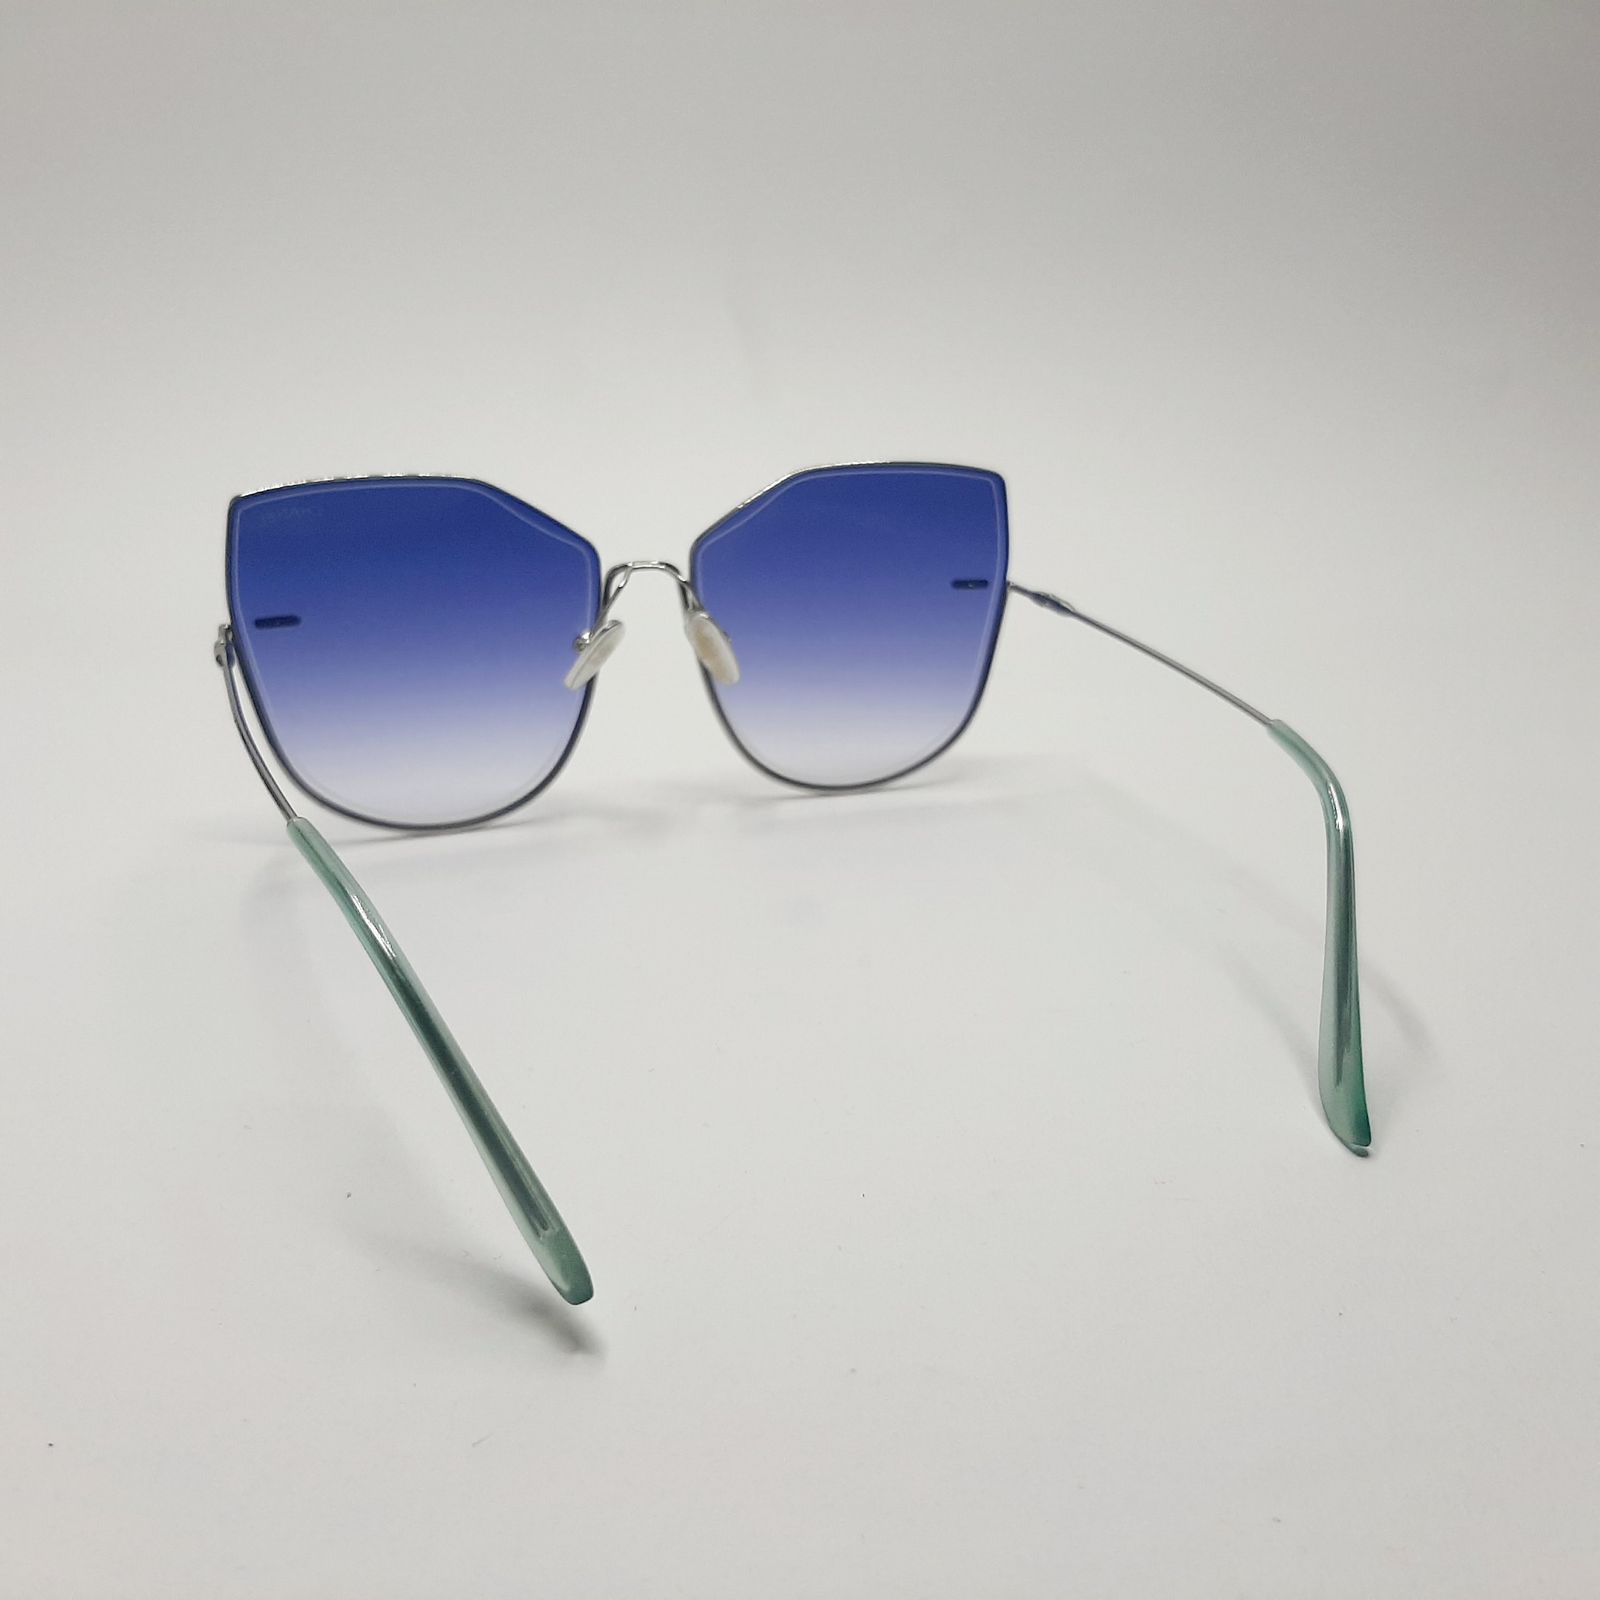 عینک آفتابی مدل S31030c21 -  - 6